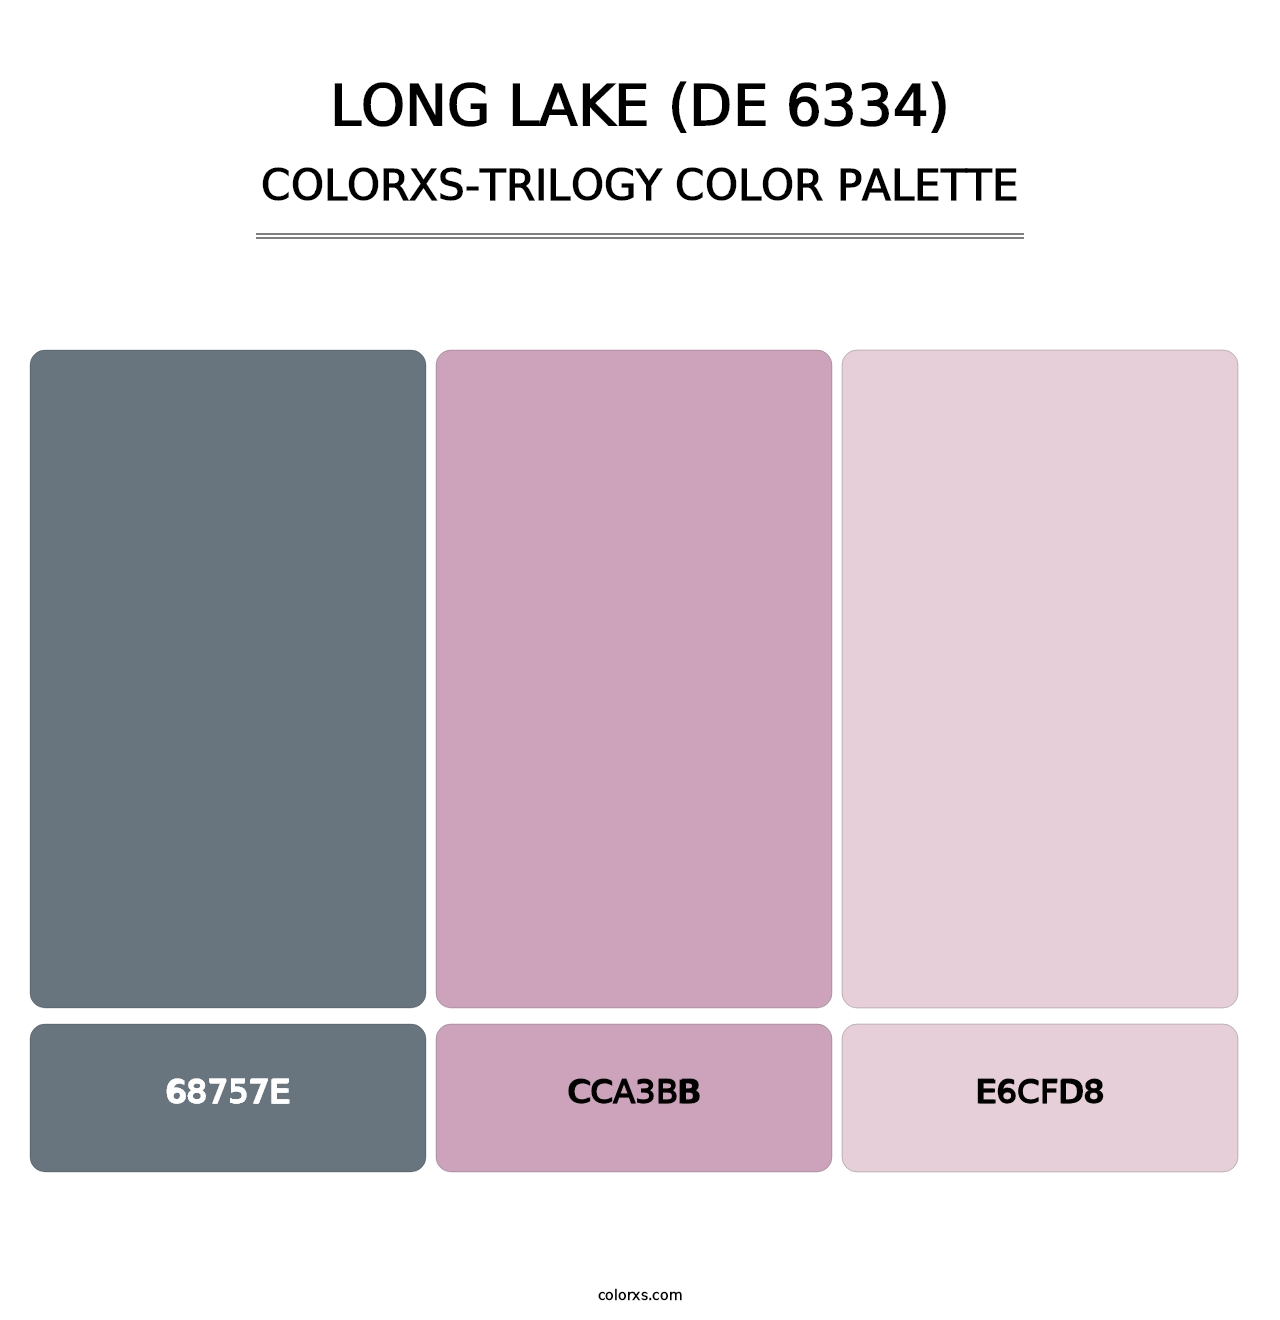 Long Lake (DE 6334) - Colorxs Trilogy Palette